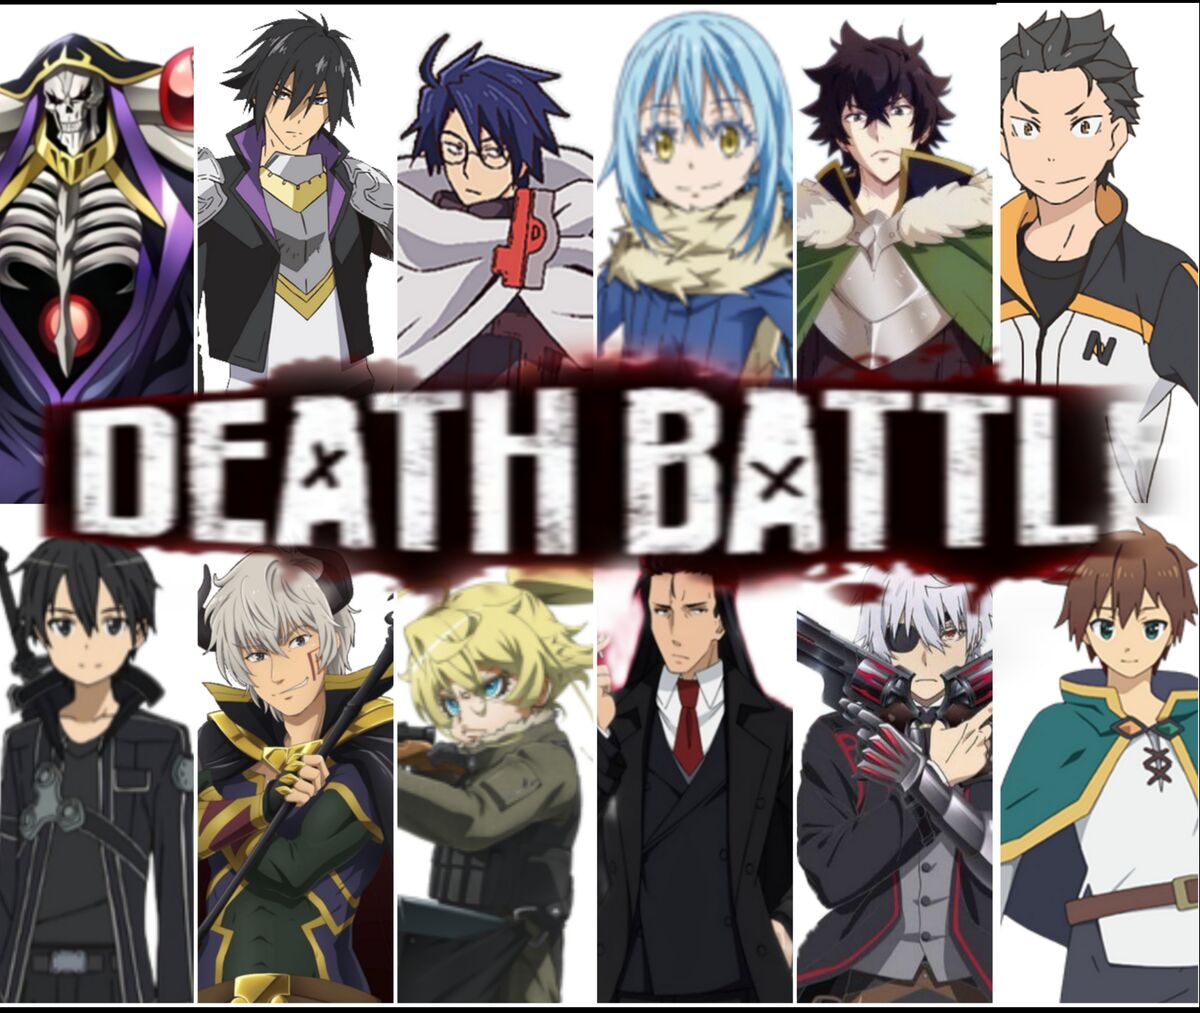 Anime Protagonist Battle Royale, Death Battle Fanon Wiki